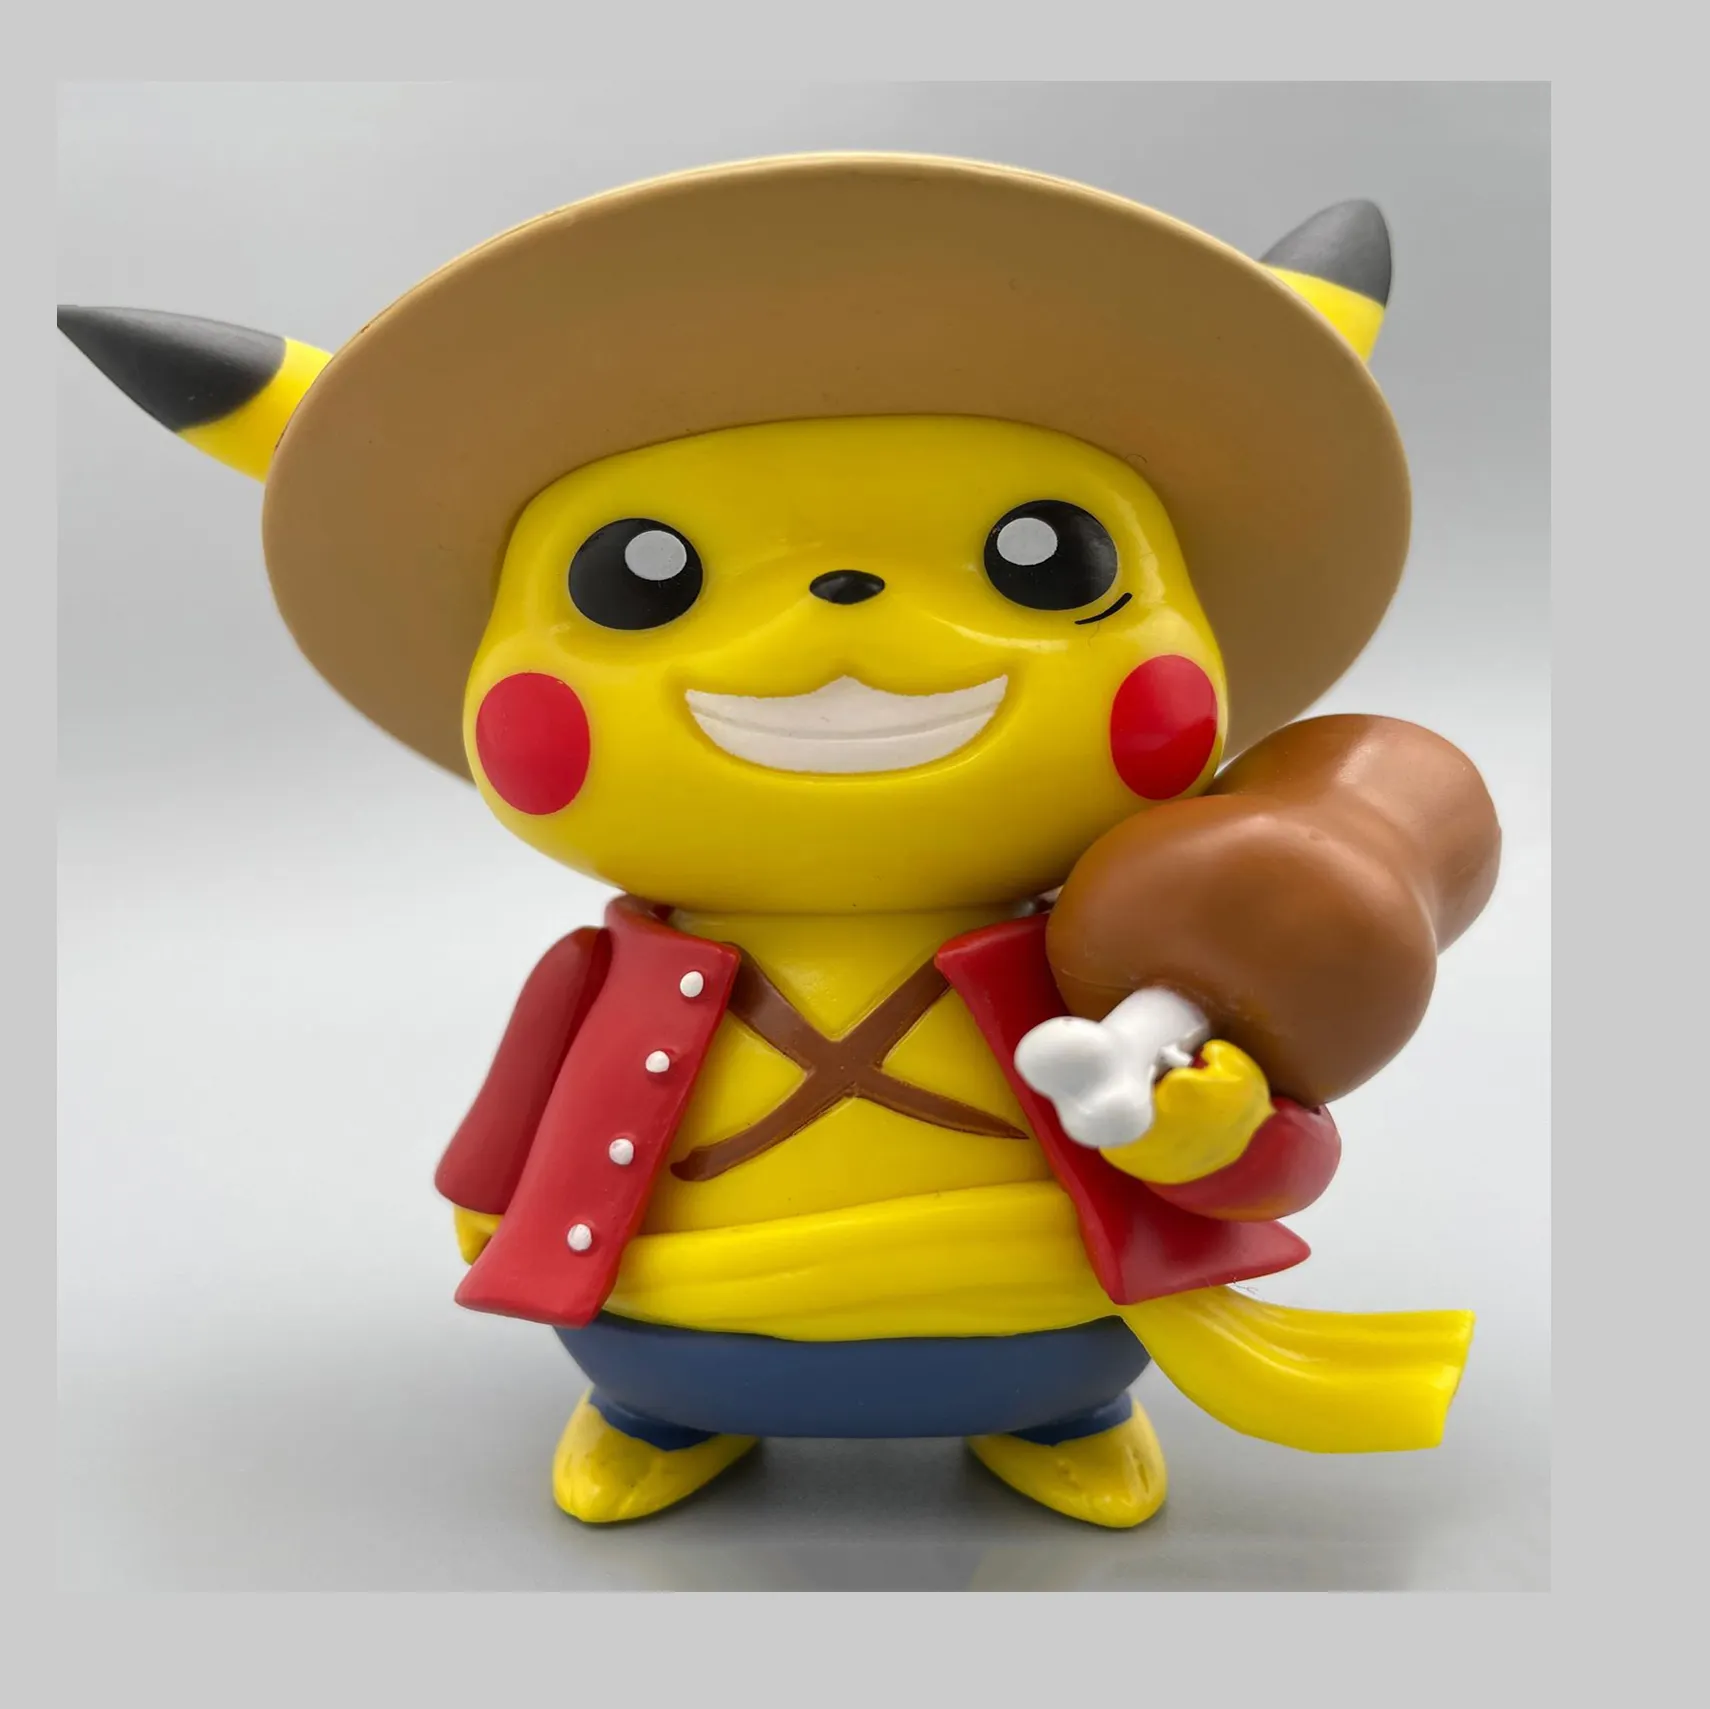 Pokemoned bir adet pika-chu Ainime figürü Luffy Roronoa Zoro Portgas.D. Ace Kawaii modeli çocuk ve oyuncak hediye için